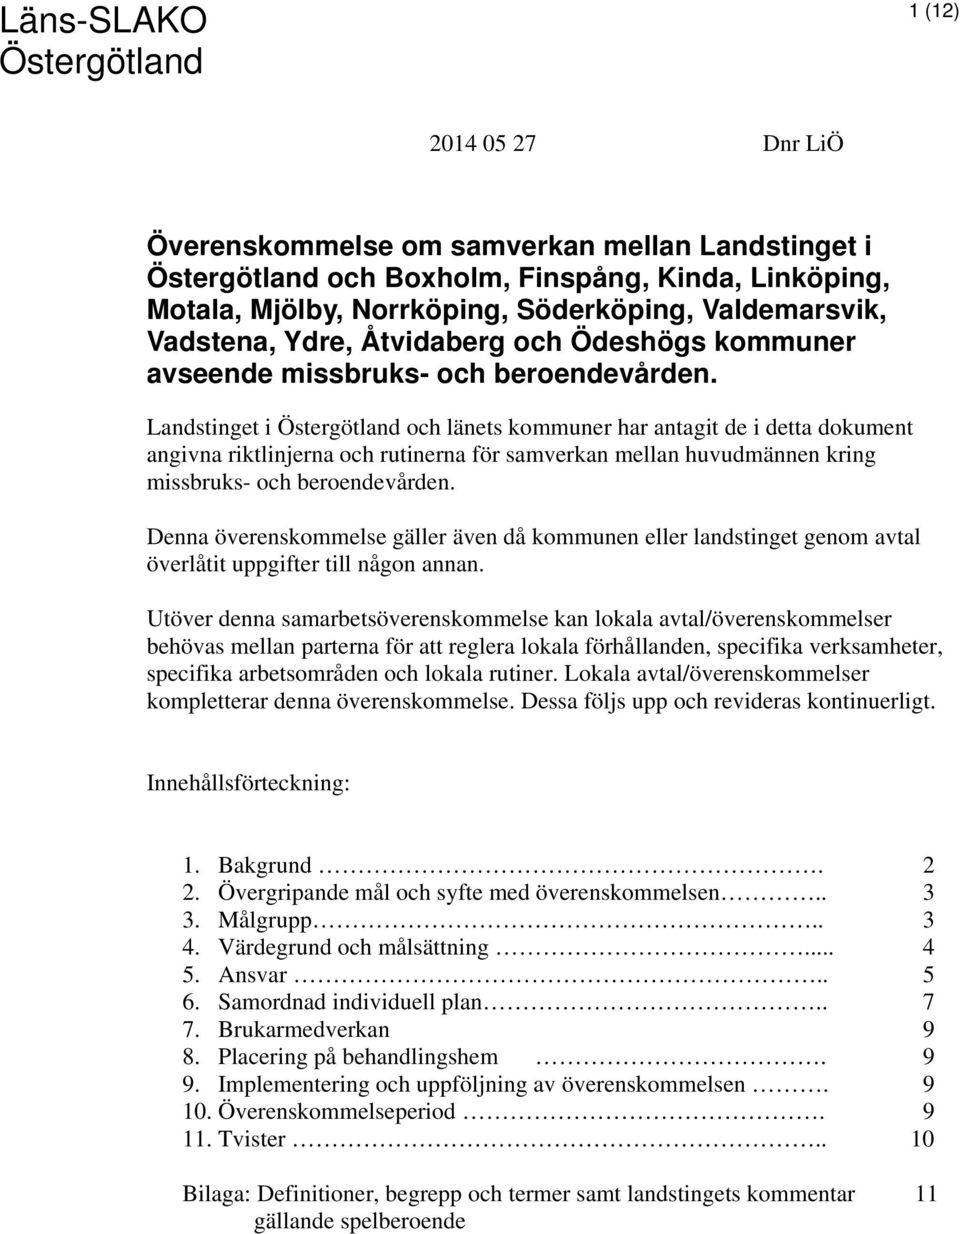 Landstinget i Östergötland och länets kommuner har antagit de i detta dokument angivna riktlinjerna och rutinerna för samverkan mellan huvudmännen kring missbruks- och beroendevården.